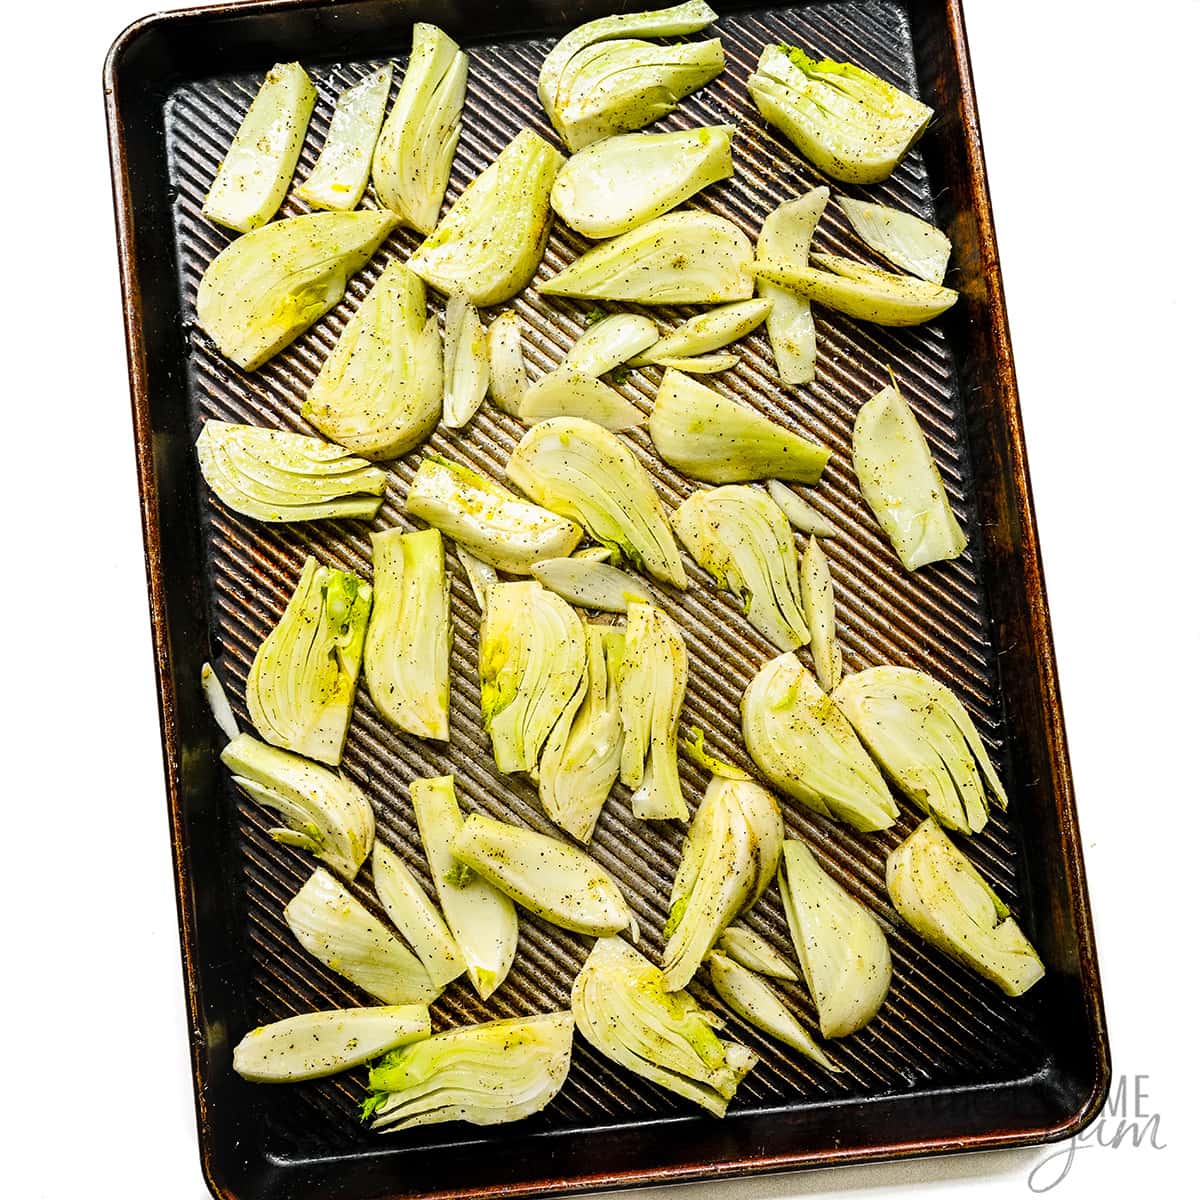 Seasoned fennel on a sheet pan.